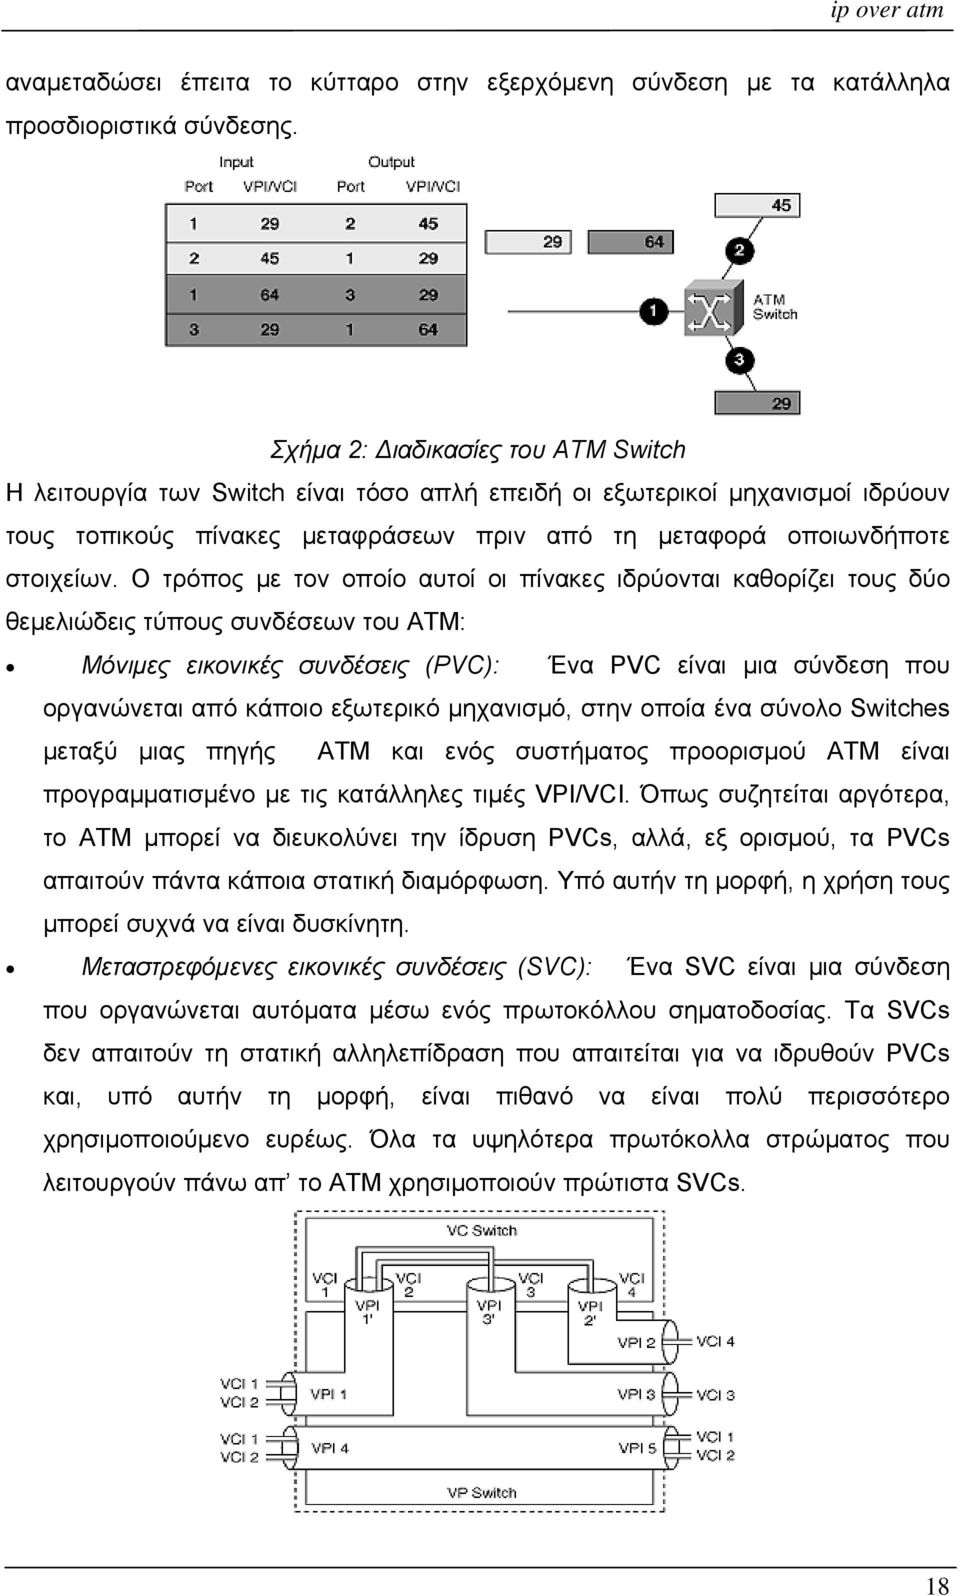 Ο τρόπος με τον οποίο αυτοί οι πίνακες ιδρύονται καθορίζει τους δύο θεμελιώδεις τύπους συνδέσεων του ATM: Μόνιμες εικονικές συνδέσεις (PVC): Ένα PVC είναι μια σύνδεση που οργανώνεται από κάποιο